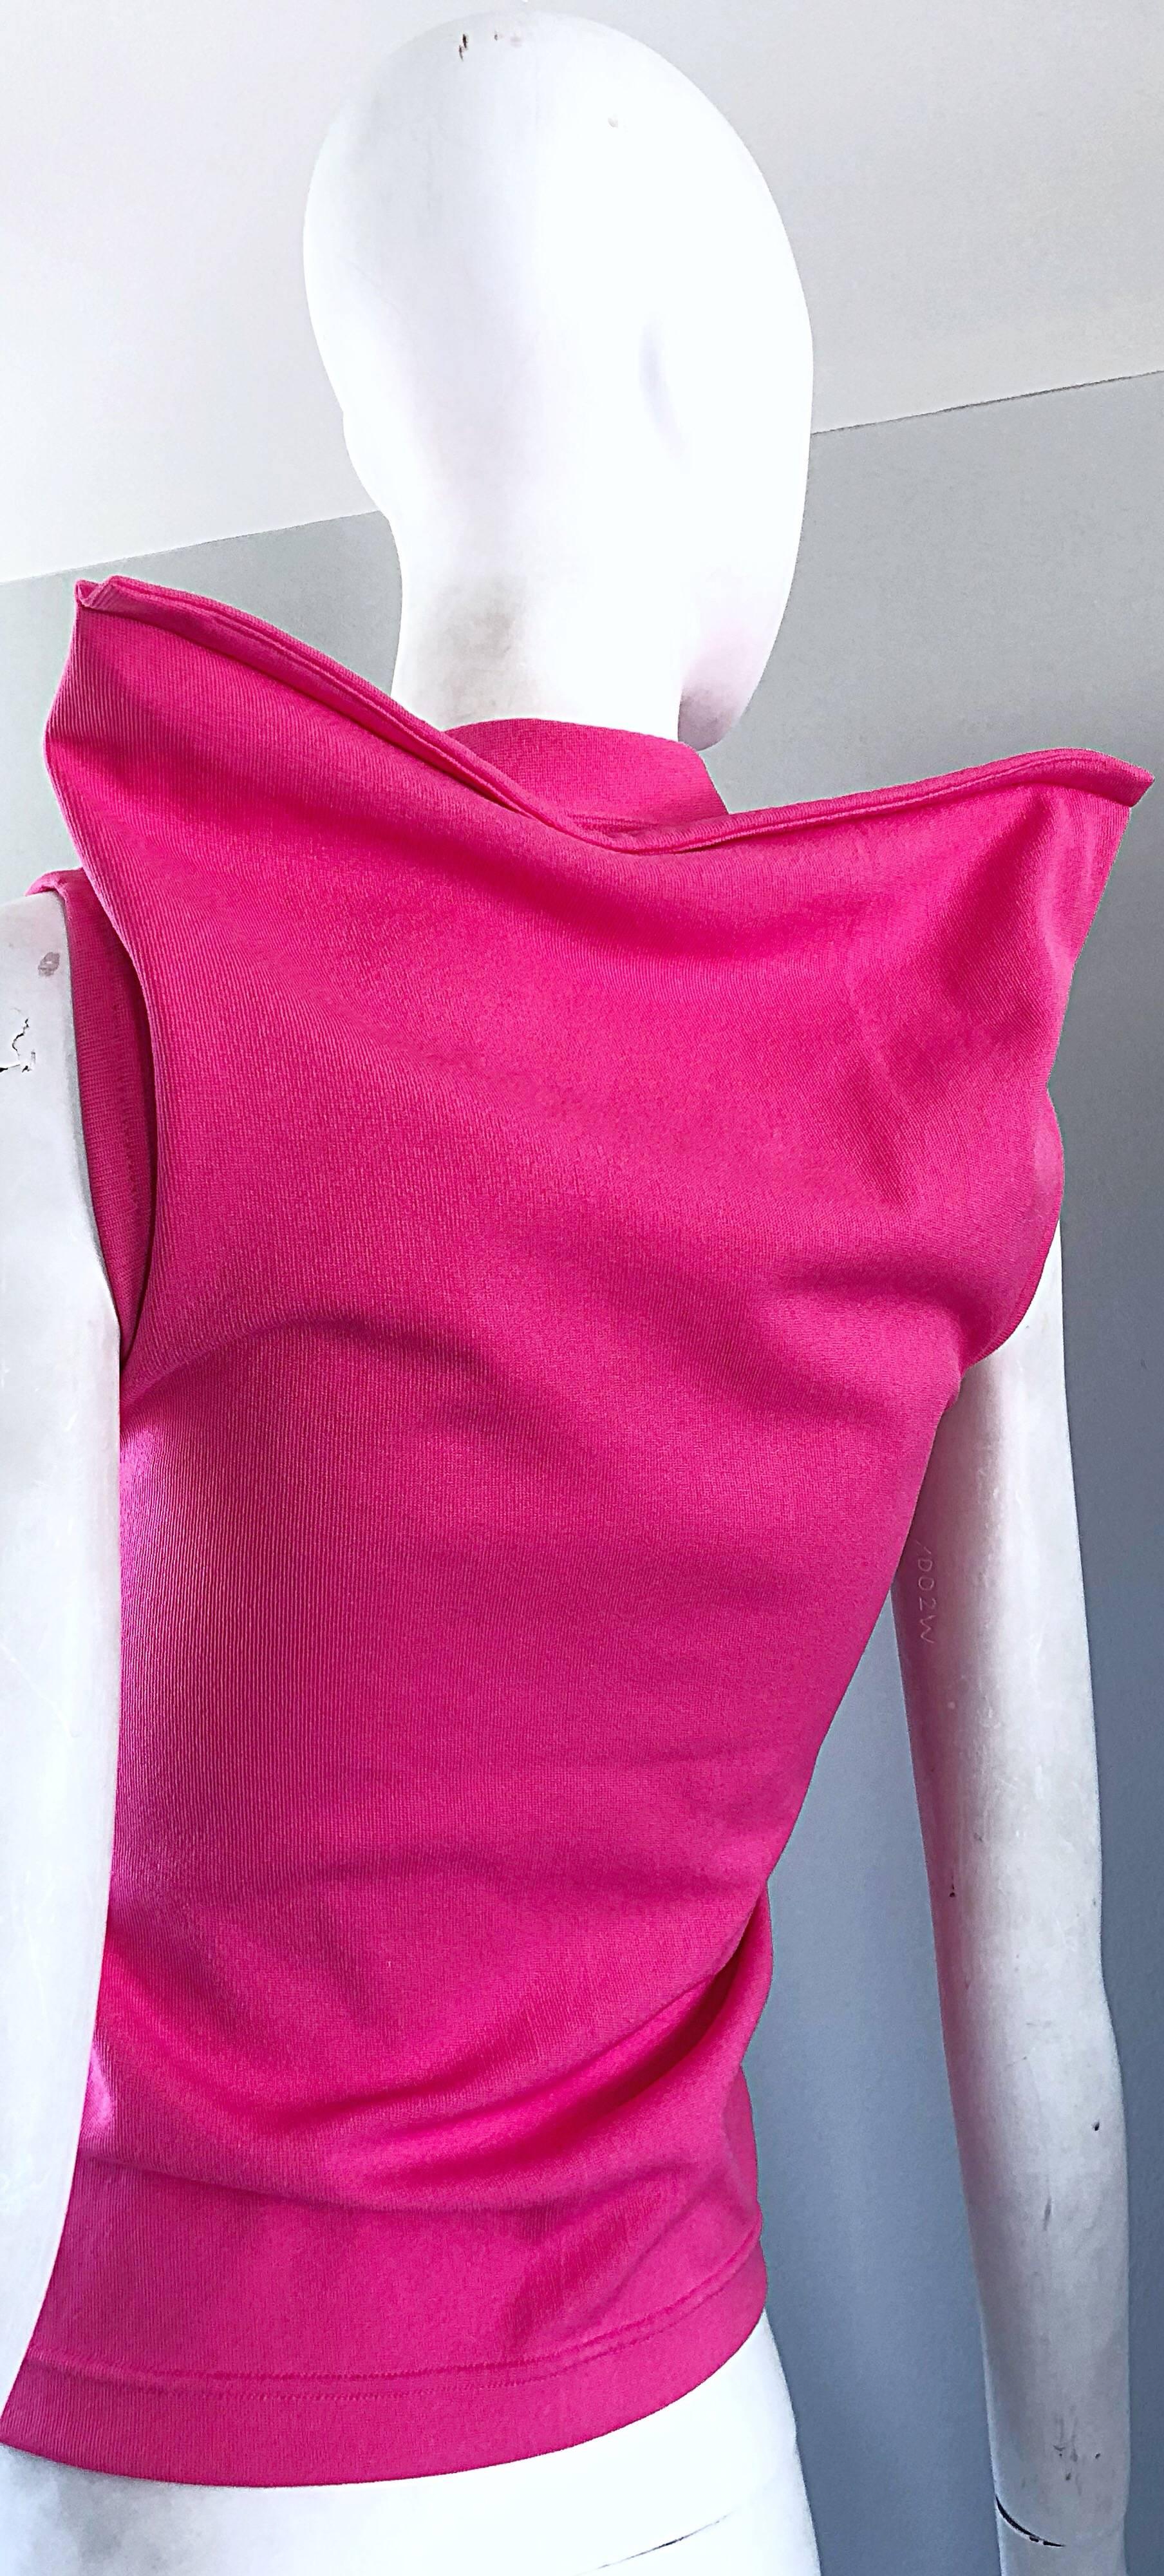 Rare Vintage Comme des Garcons 1990s Hot Pink Avant Garde Futuristic Top Blouse  For Sale 1